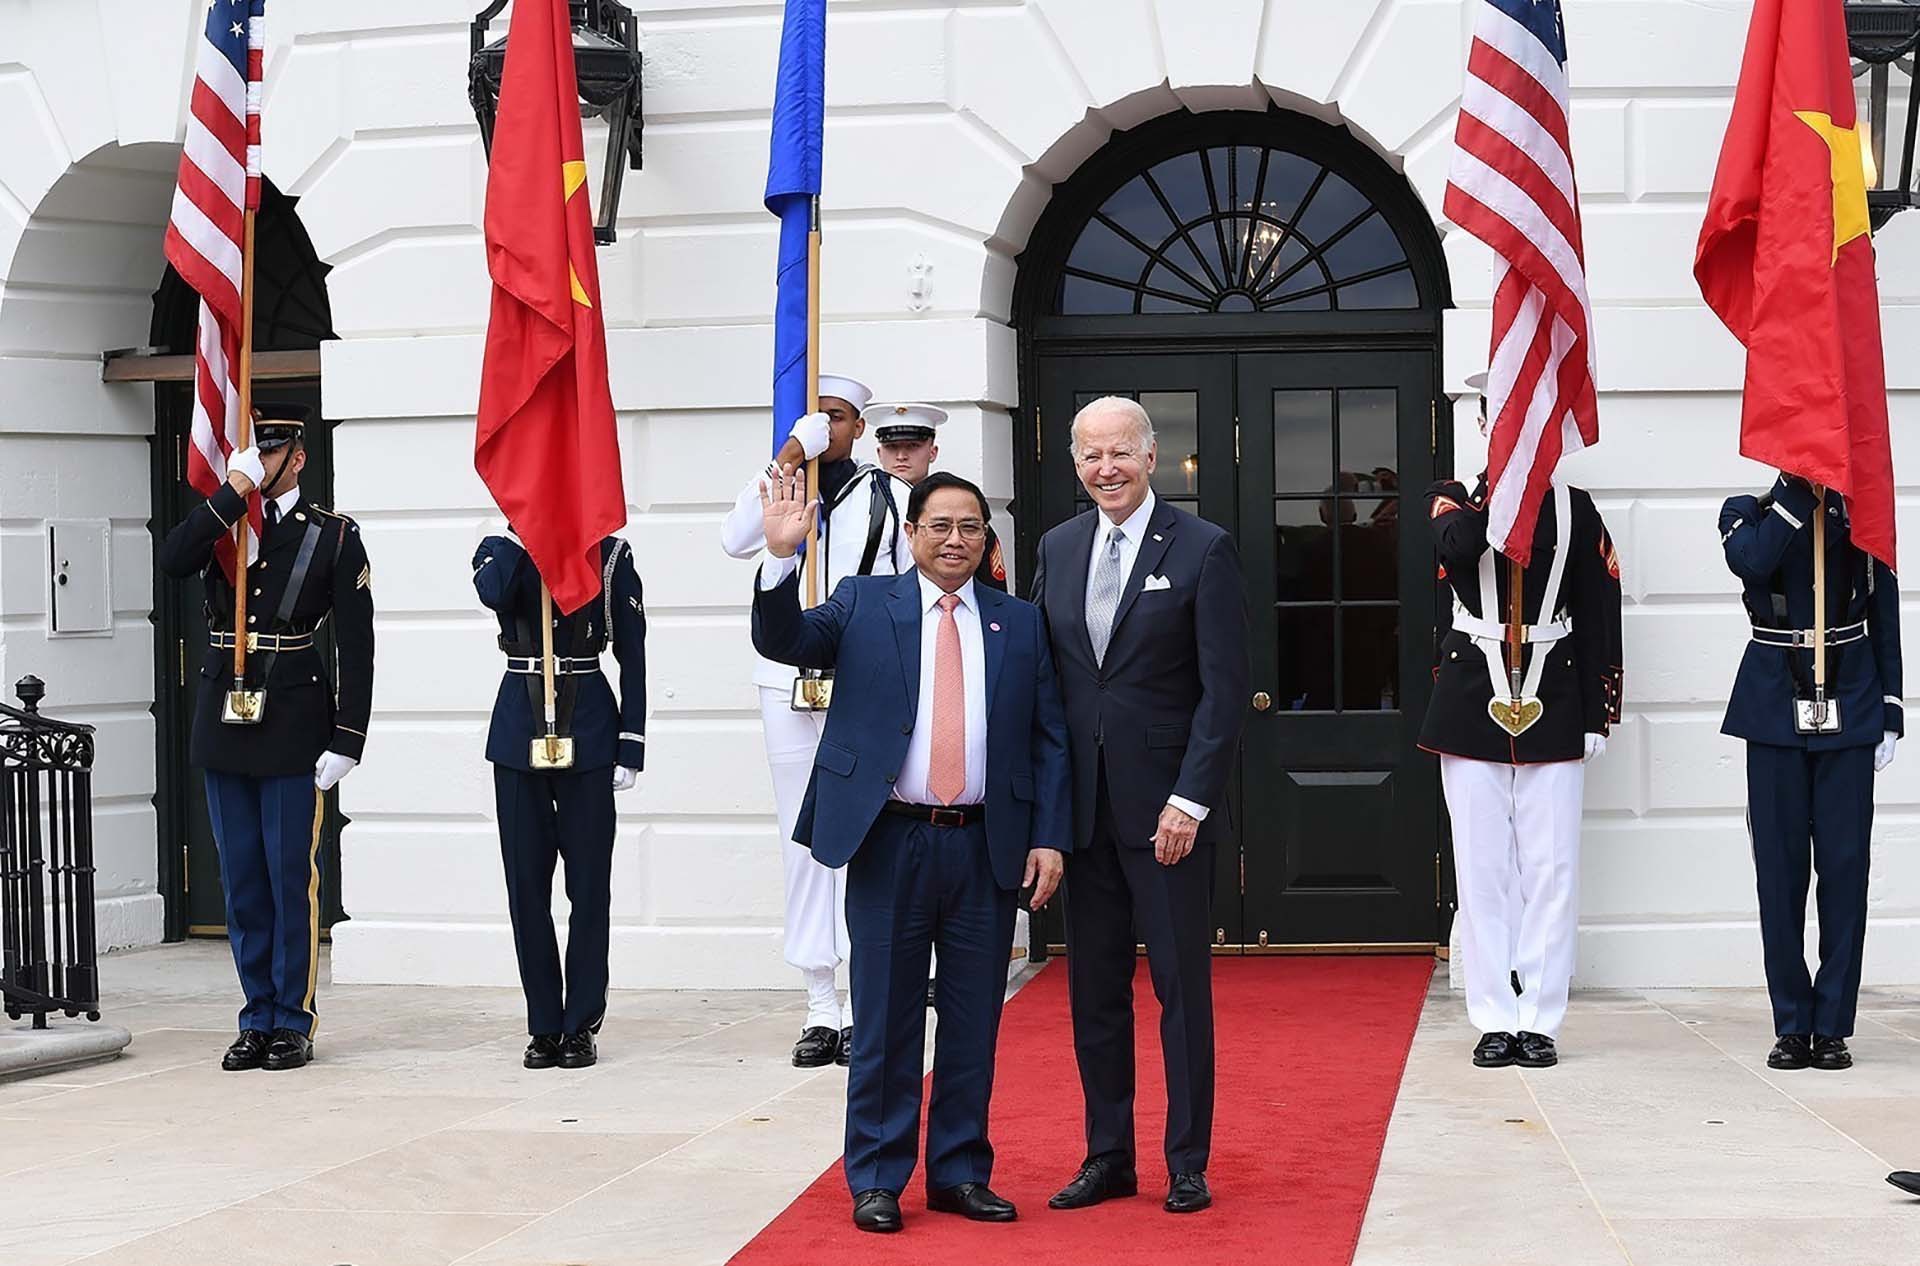 Hình ảnh Thủ tướng Phạm Minh Chính cùng các nhà lãnh đạo ASEAN dự chiêu đãi của Tổng thống Hoa Kỳ